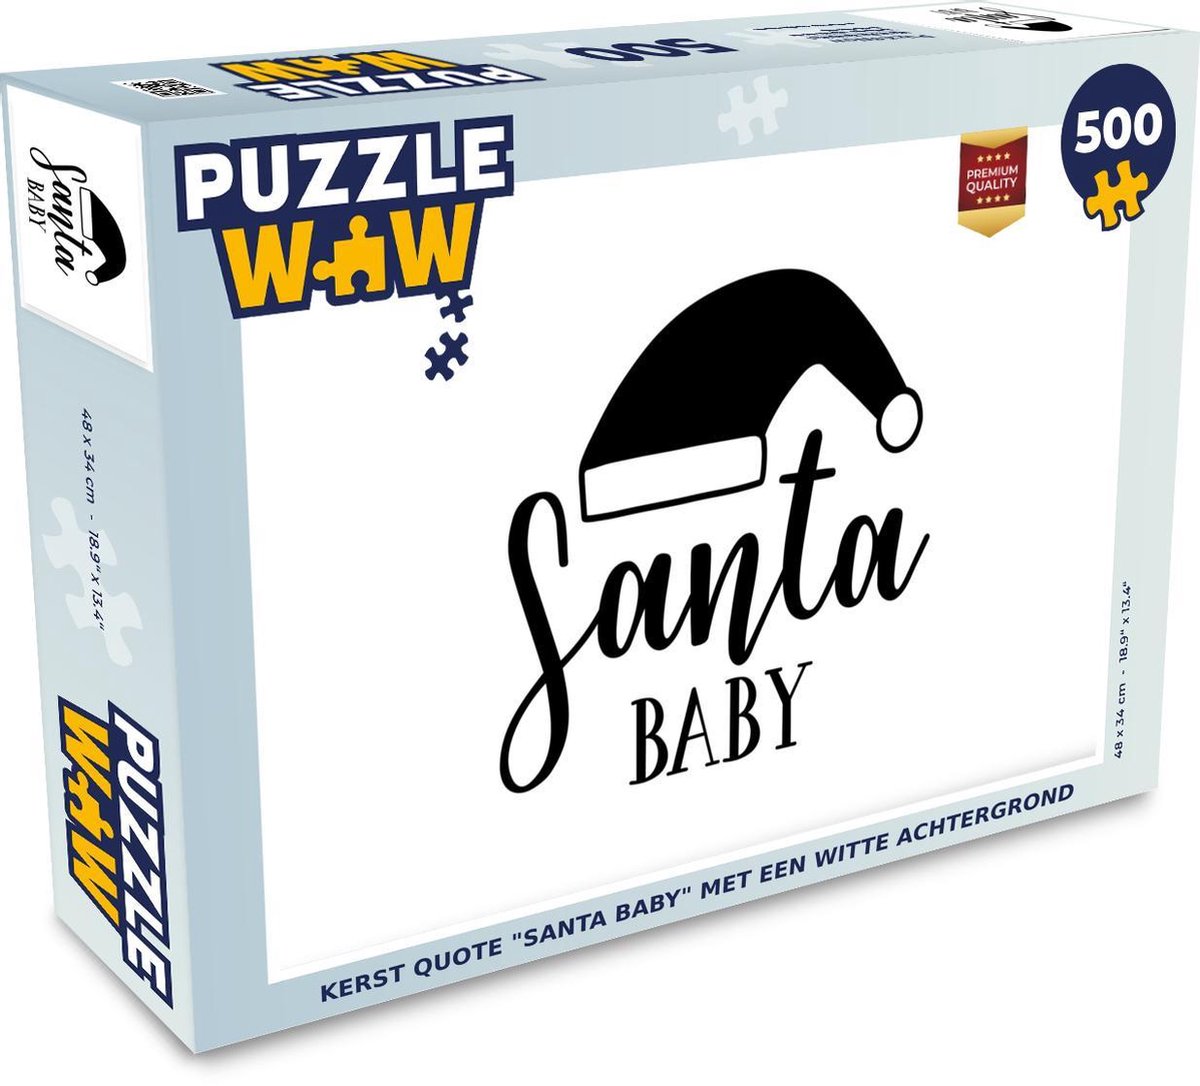 Afbeelding van product Puzzel 500 stukjes Kerst Quotes - Kerst quote Santa Baby met een witte achtergrond puzzel 500 stukjes - PuzzleWow heeft +100000 puzzels